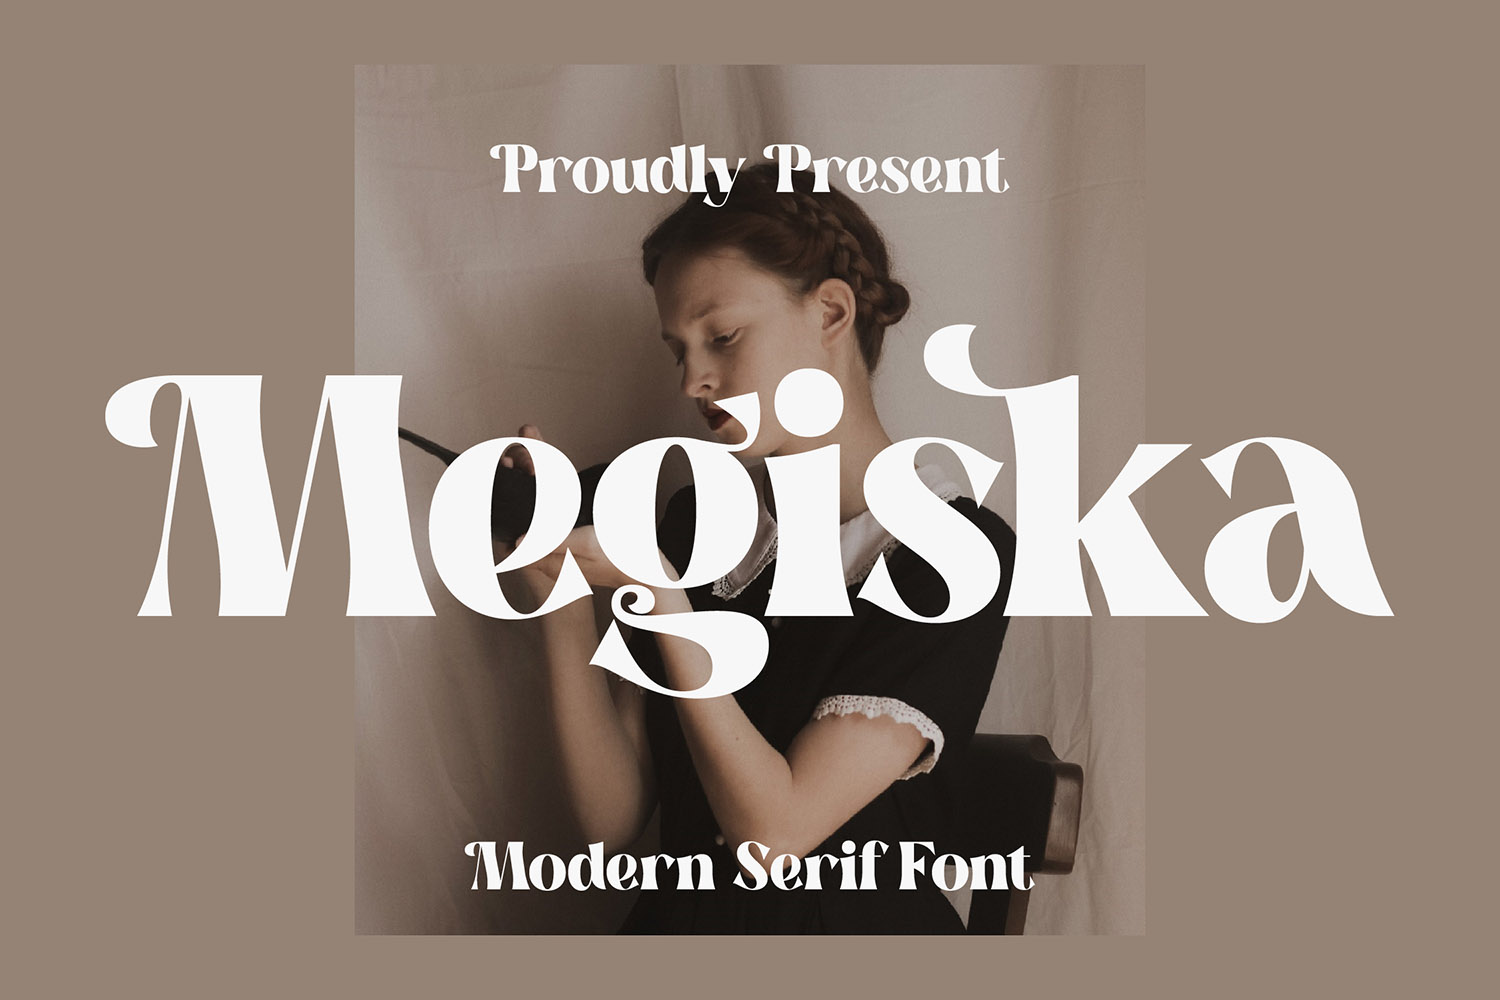 Megiska Free Font